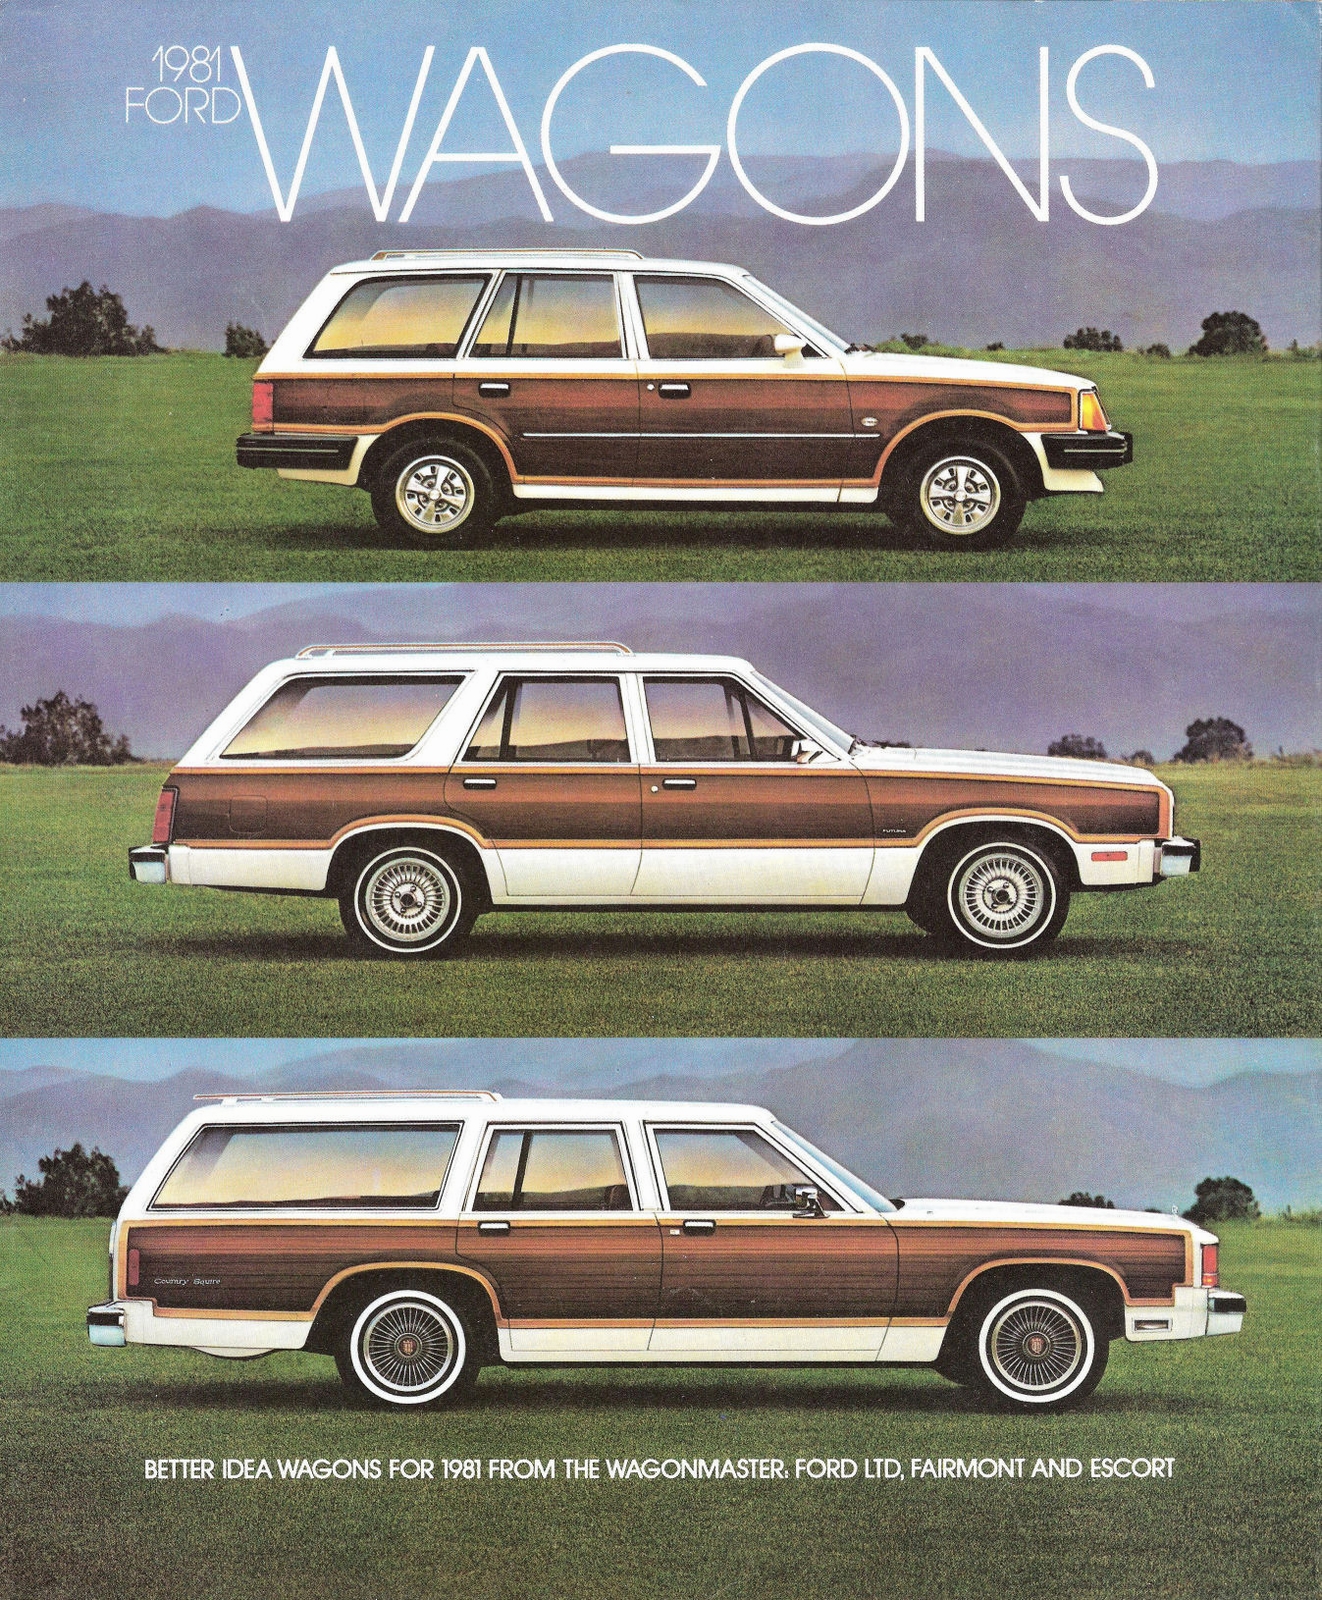 n_1981 Ford Wagons Foldout-01.jpg